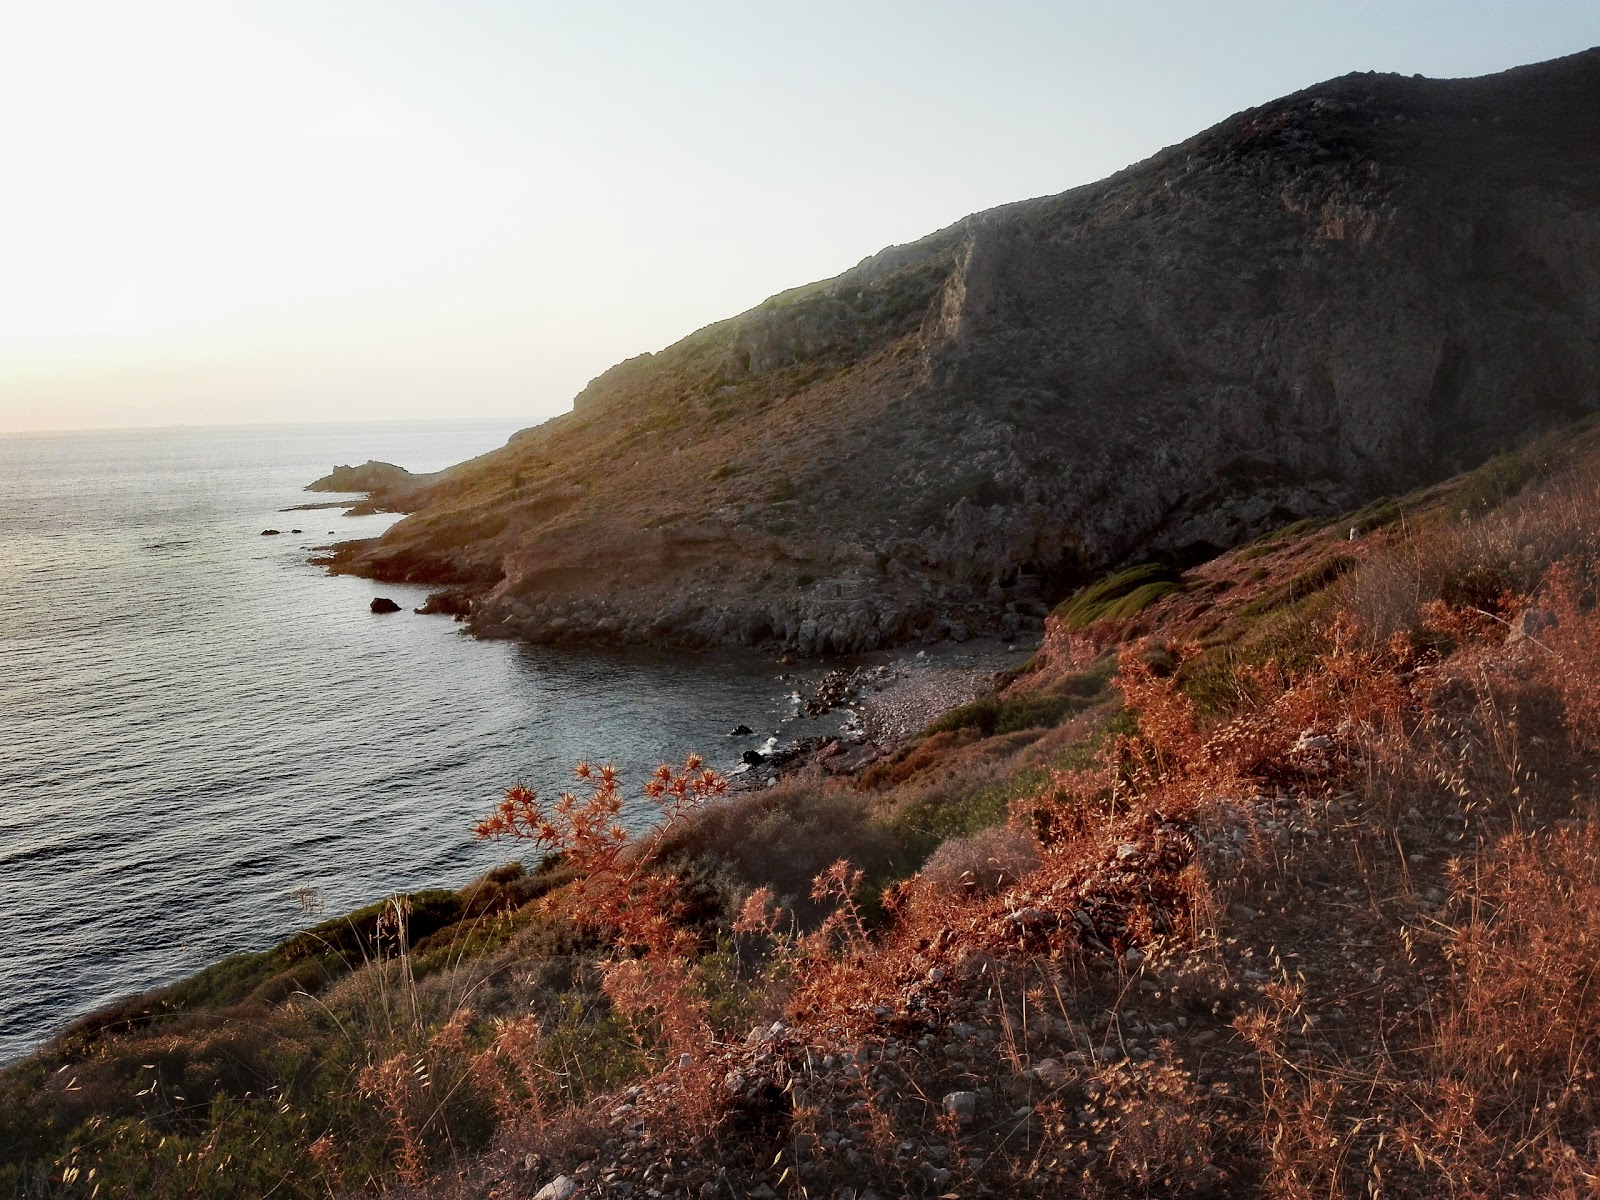 Agios Eleftherios'in fotoğrafı taşlı kum yüzey ile